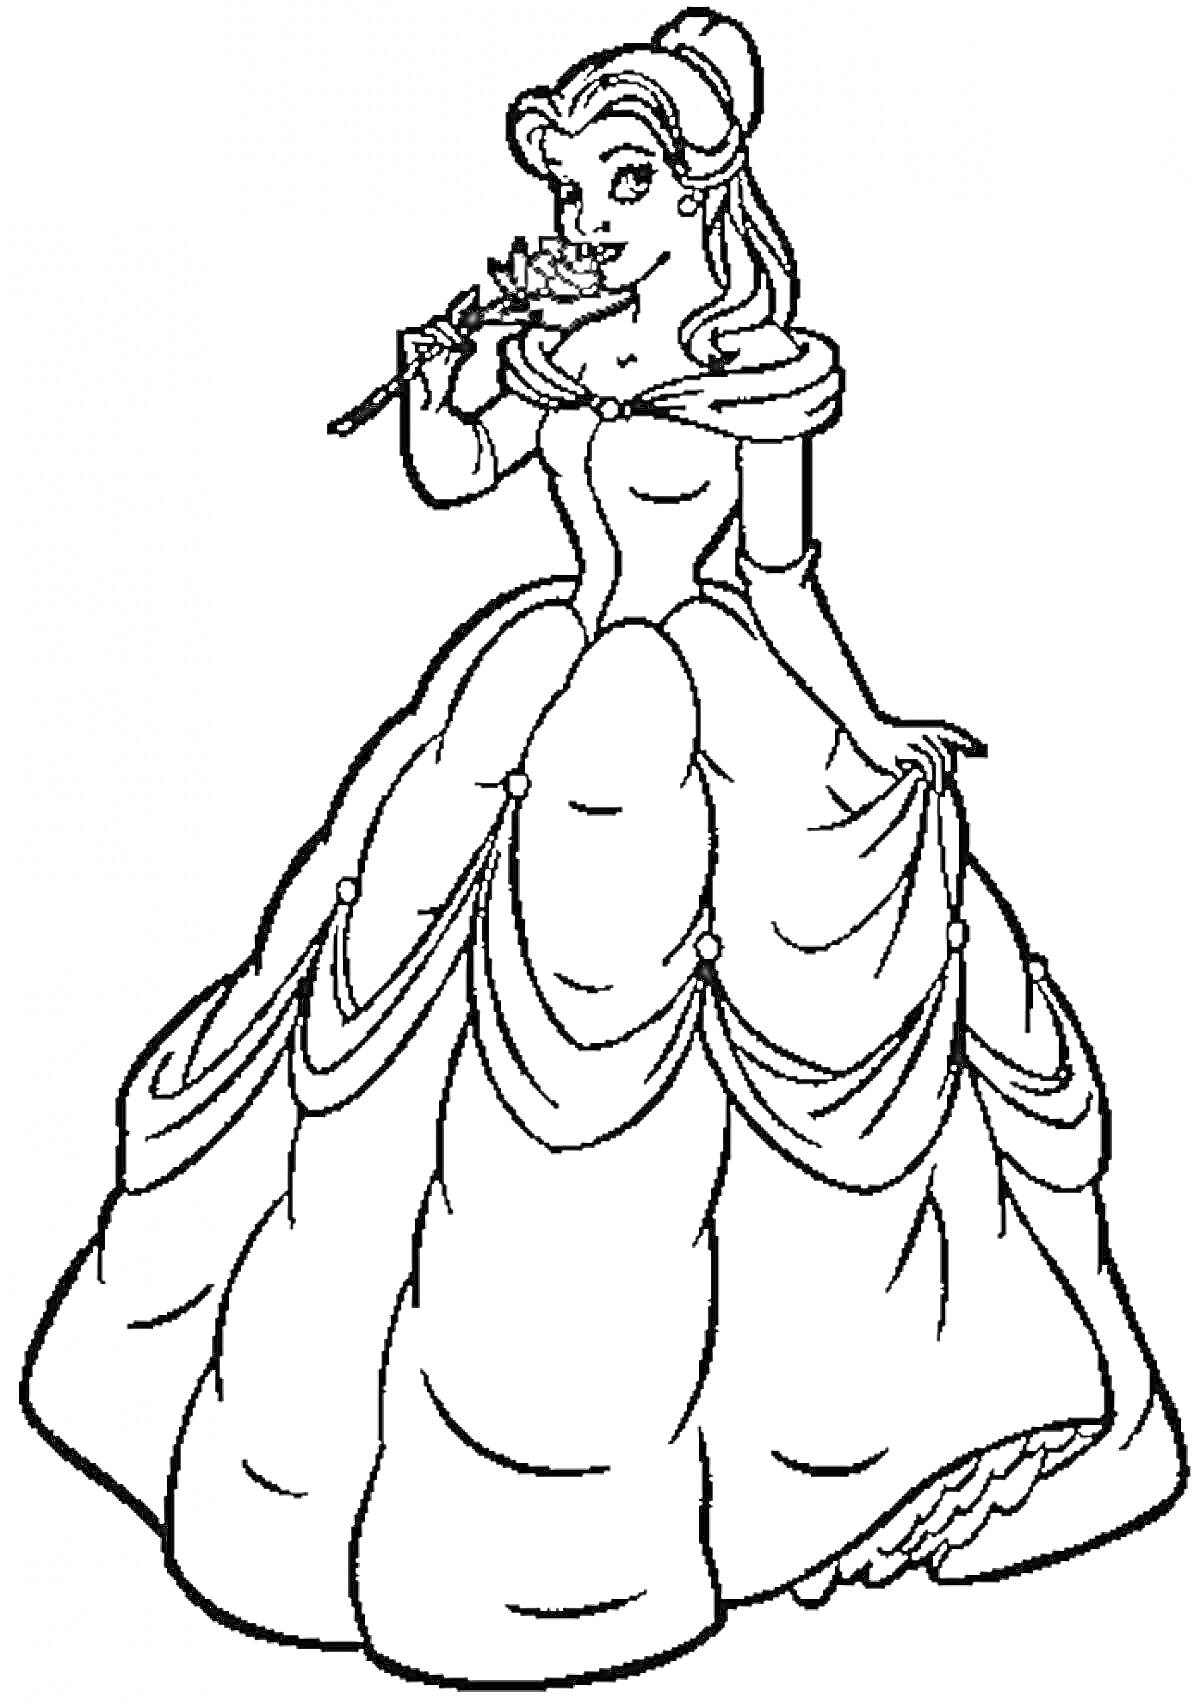 Раскраска Принцесса Бель в пышном платье с розой в руке